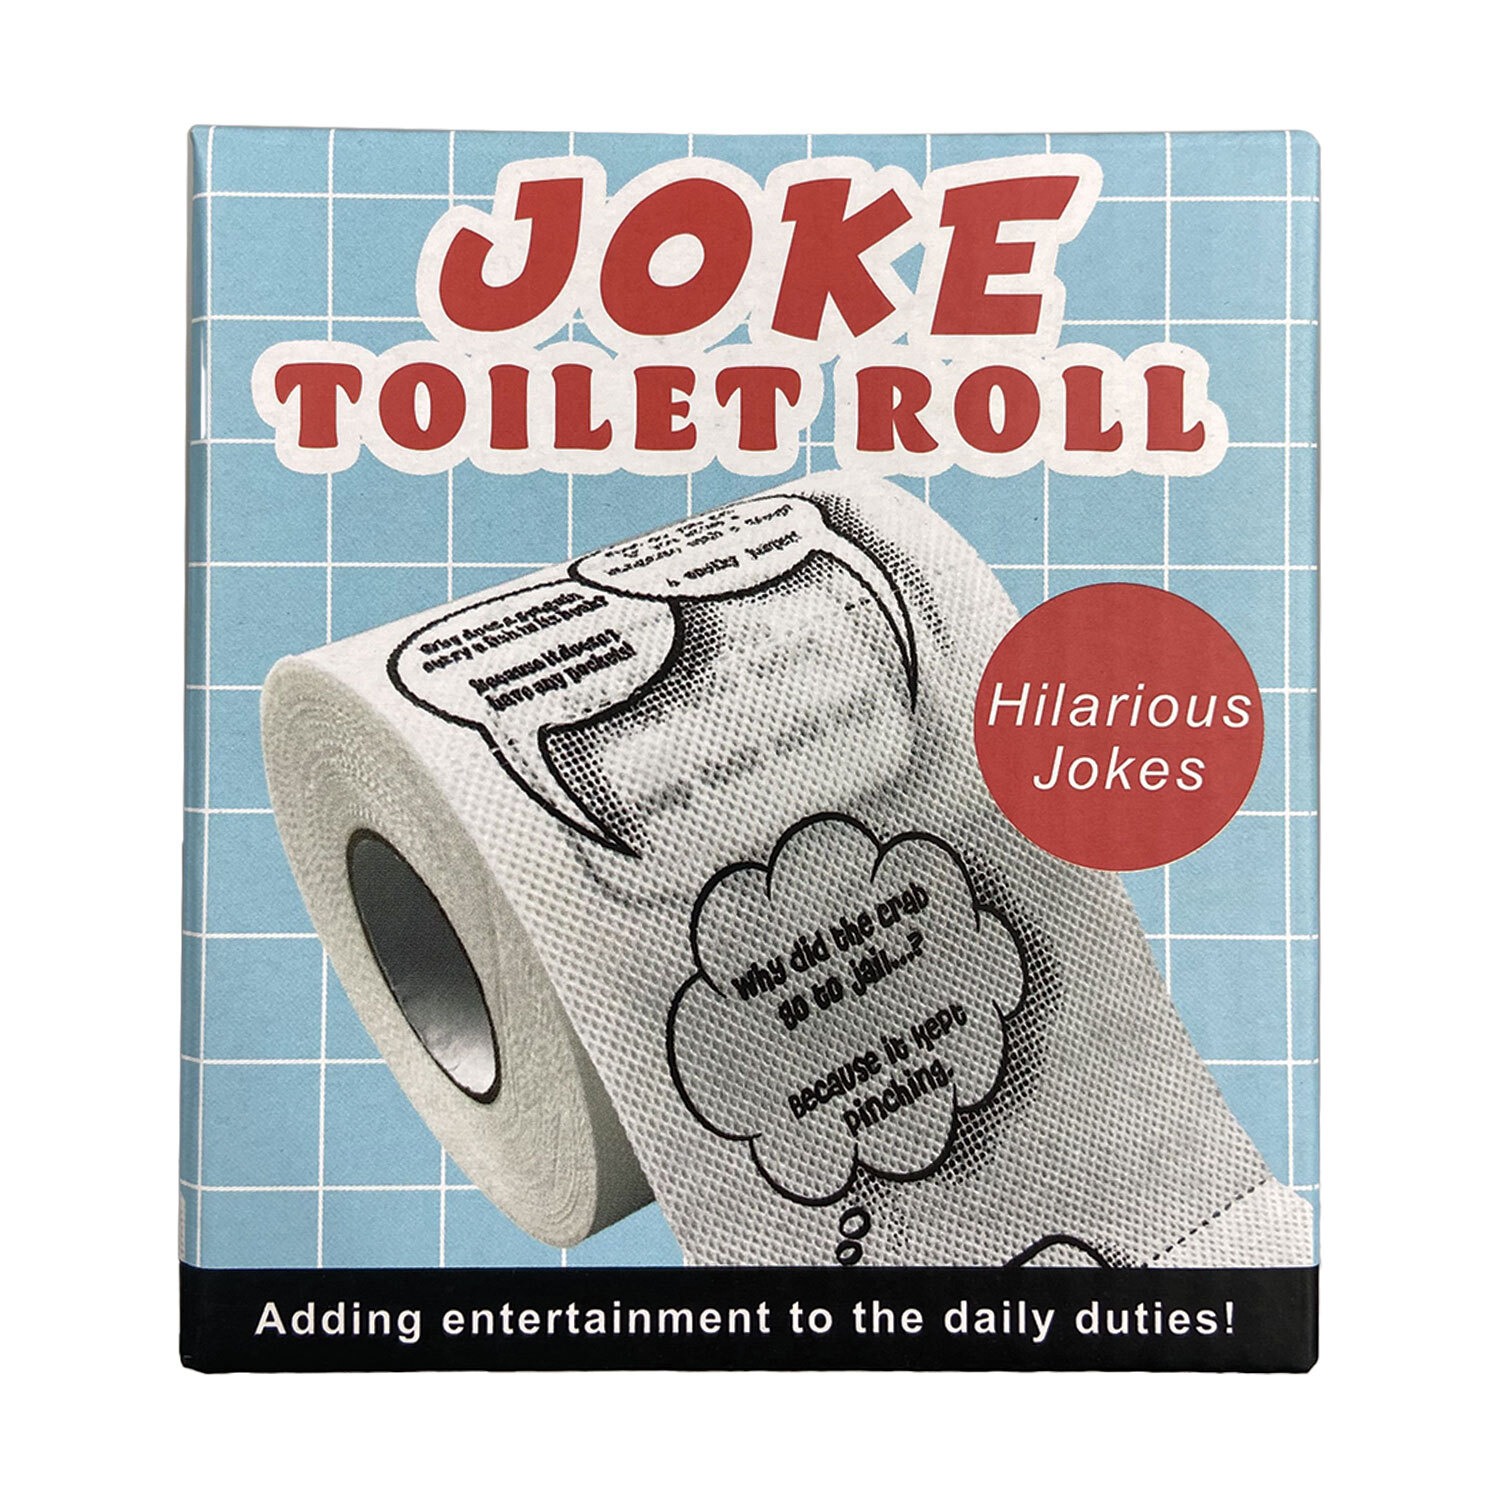 G&G Joke Toilet Roll Image